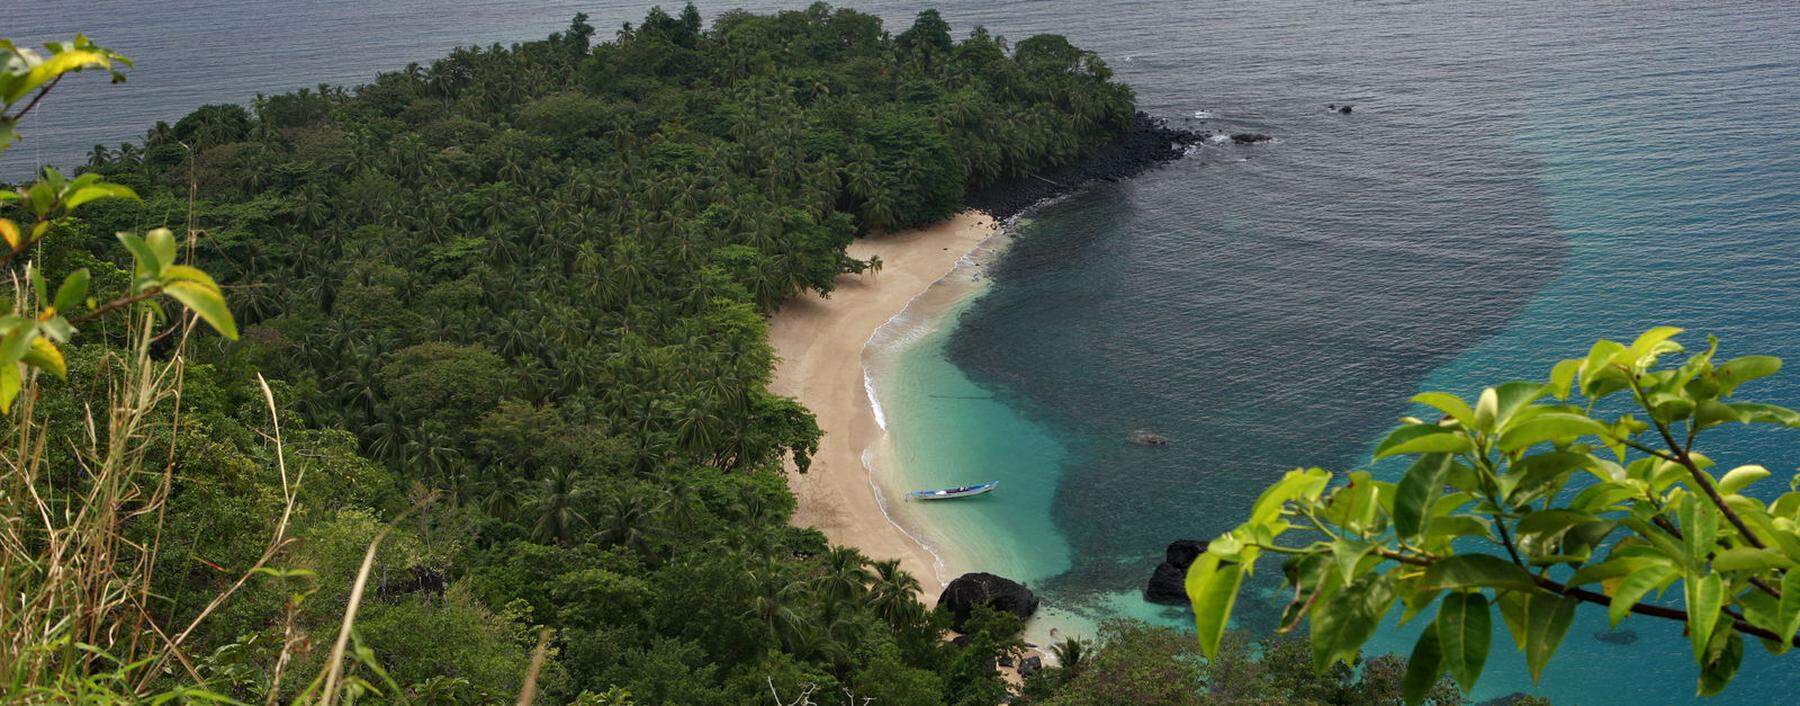 Banana Beach auf Príncipe: Der Strand zählt – je nach Ranking – zu den schönsten der Welt.